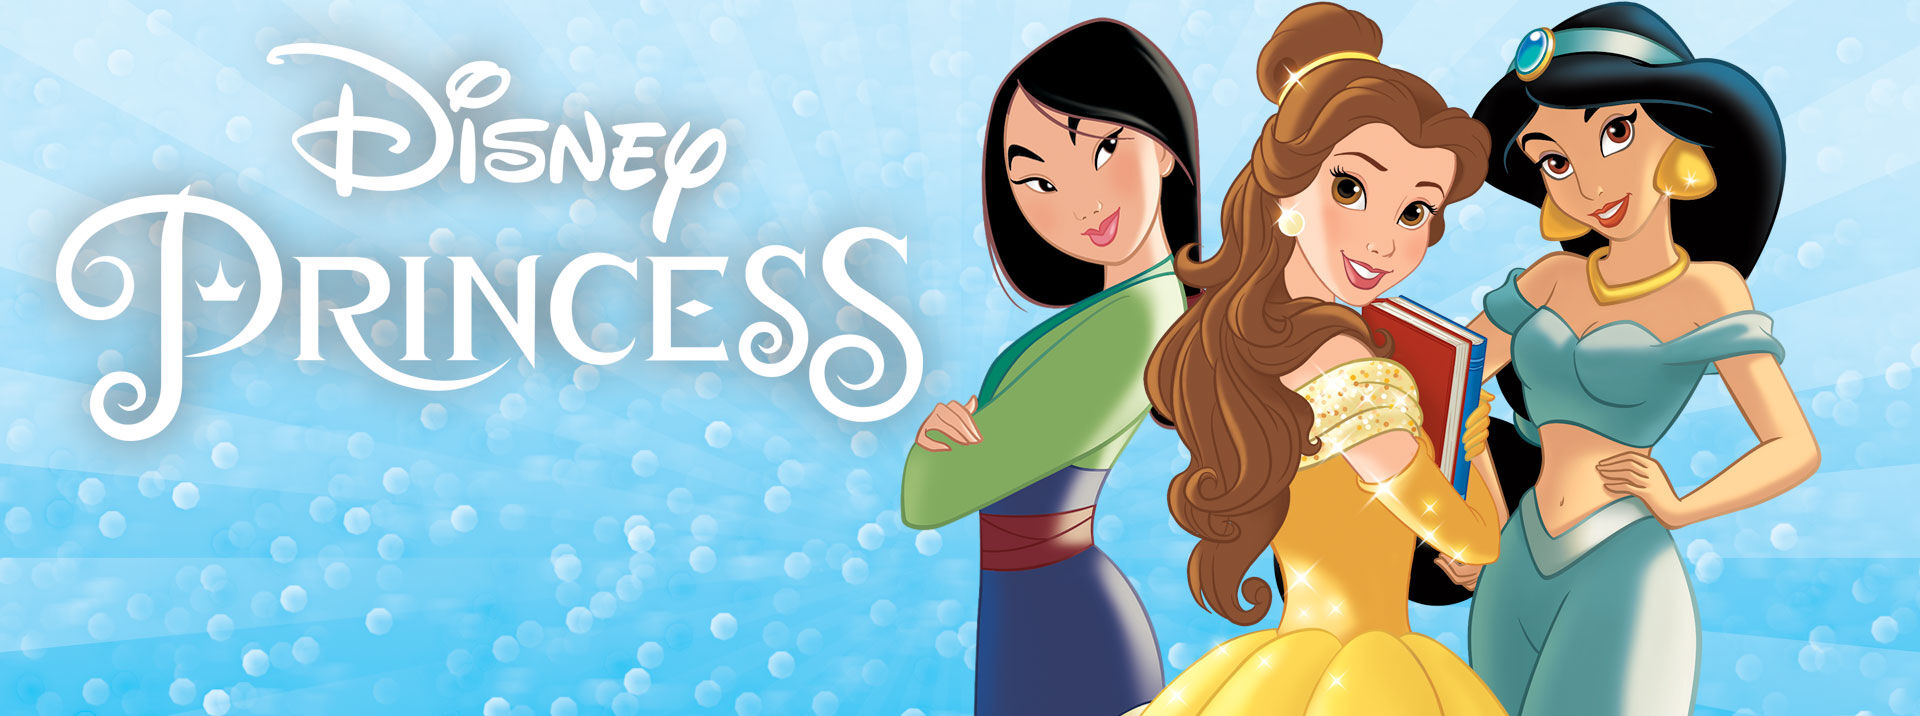 Disney Princess Characters & Princess Gifts | Crayola.com | Crayola